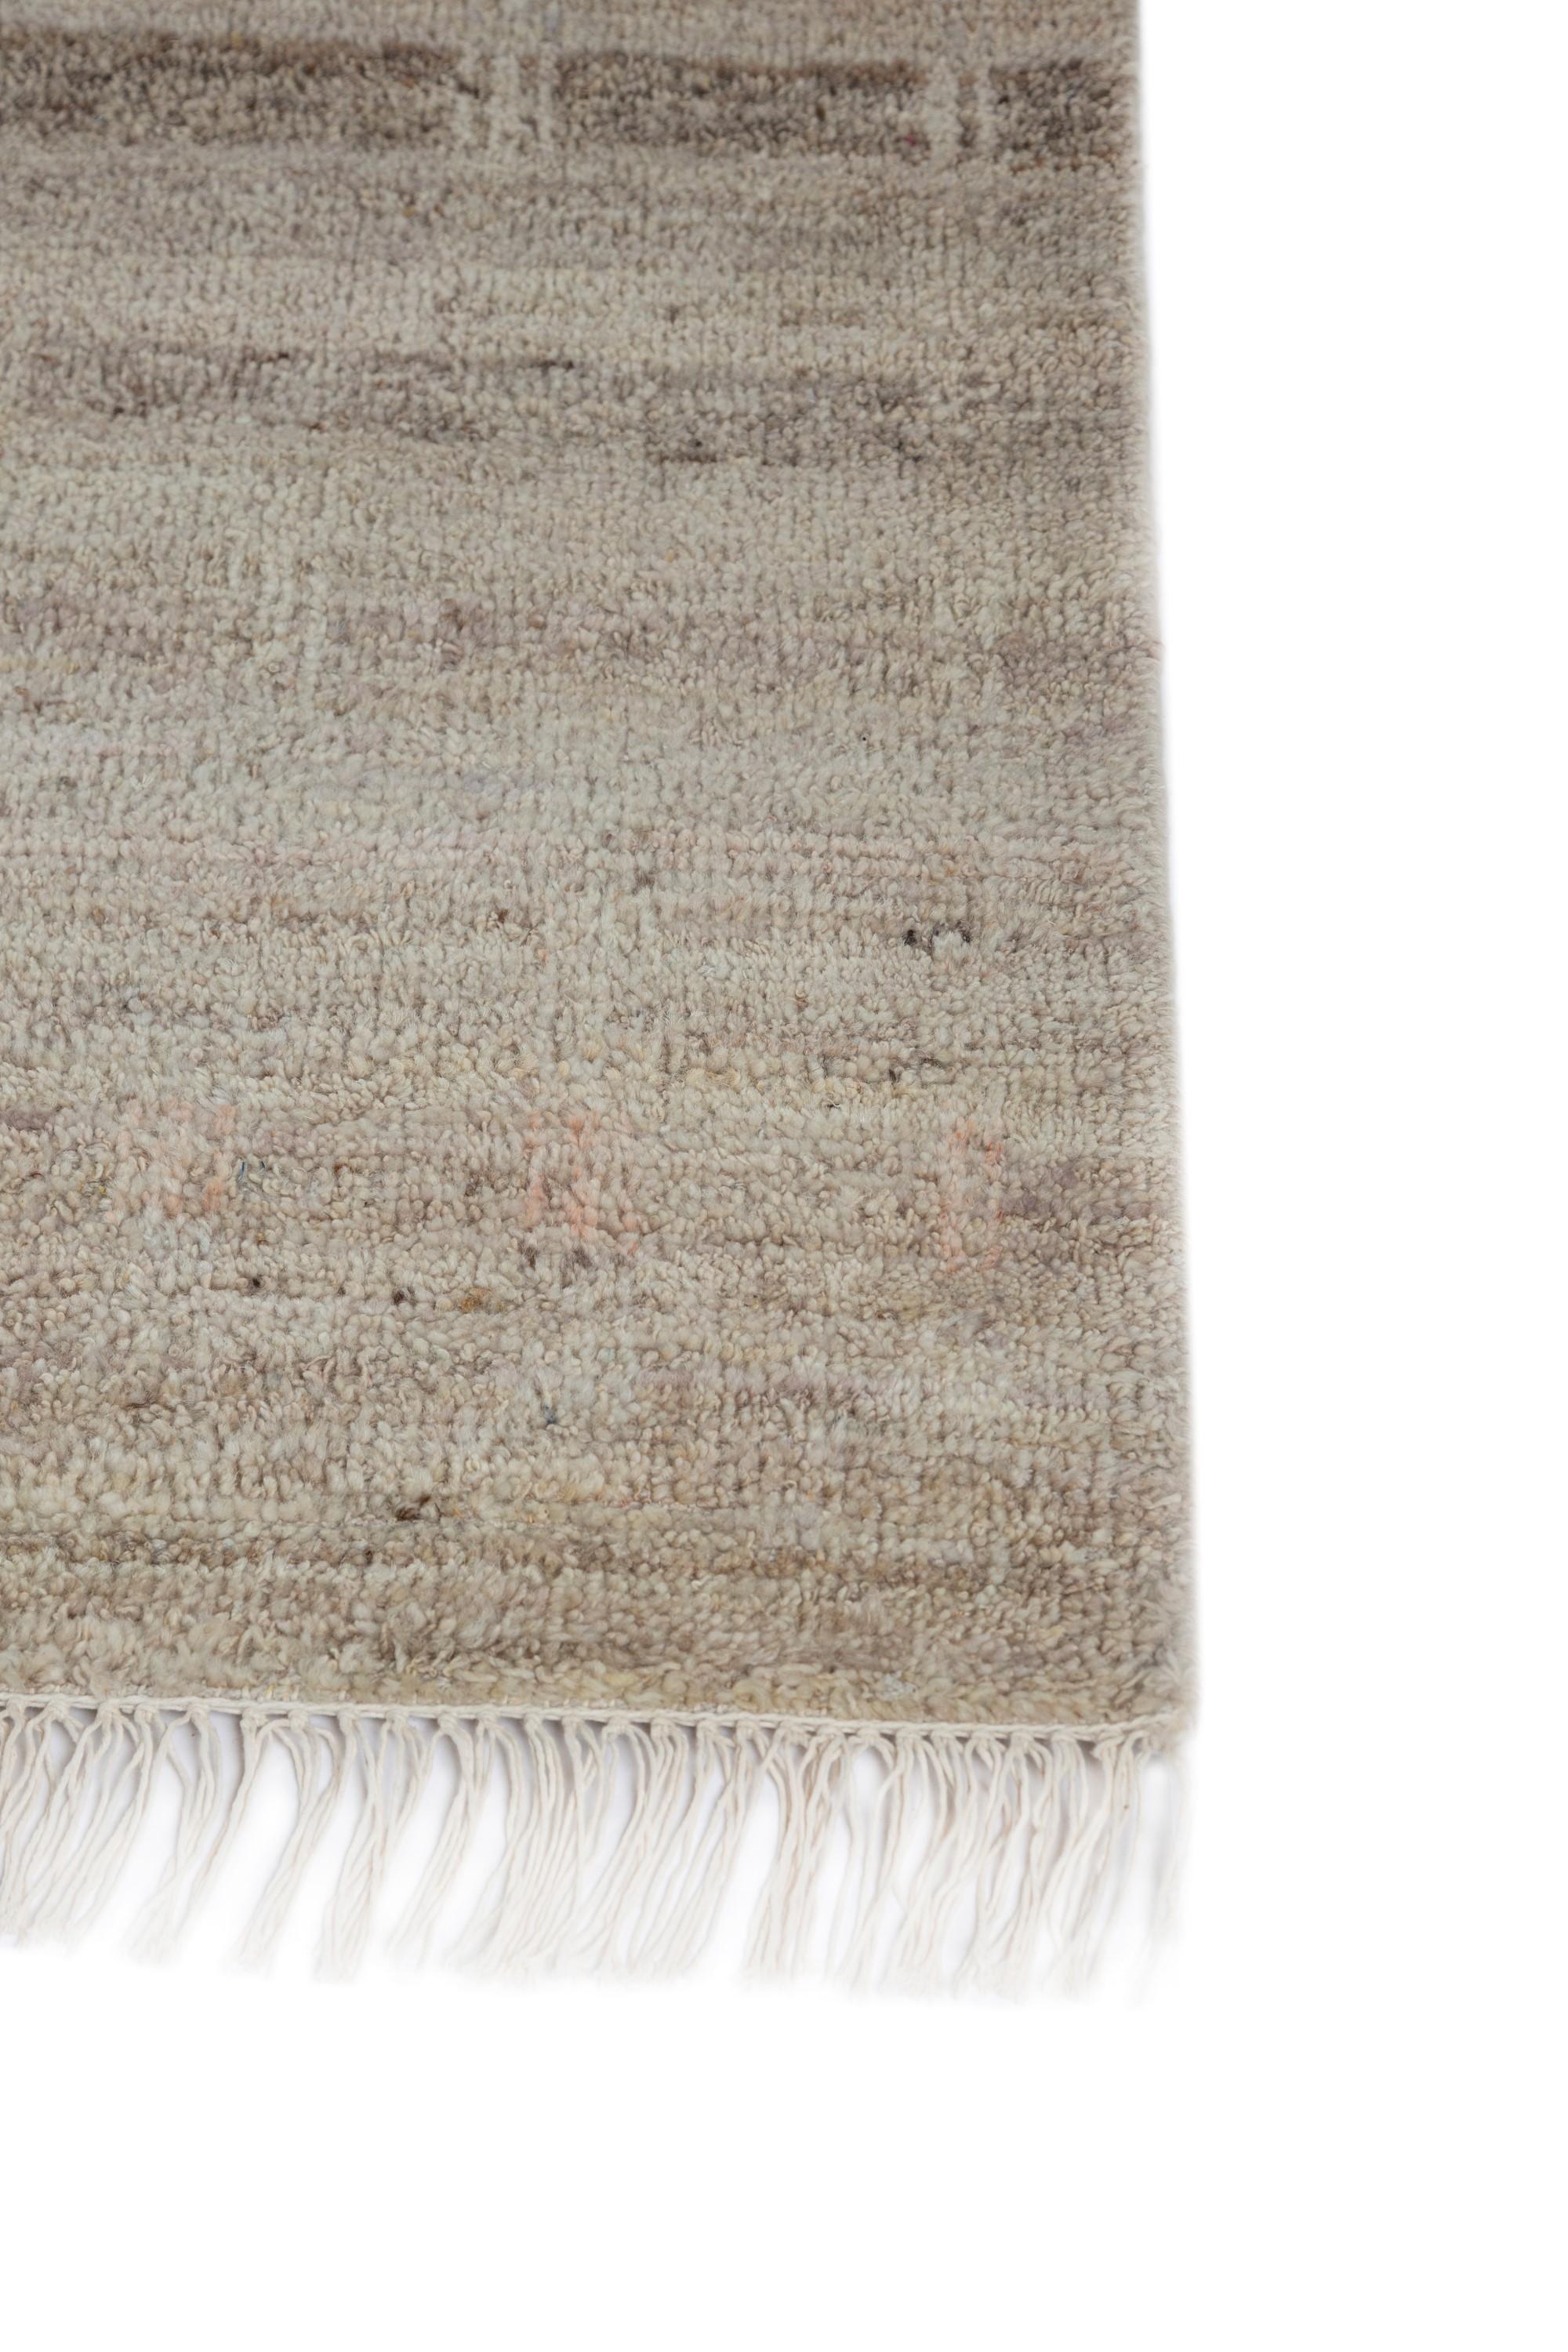 Entrez dans le monde du design raffiné avec ce superbe tapis en laine de notre collection Thyme. Ce tapis en laine se distingue par son motif à la fois doux et percutant, qui crée une profondeur et un volume visuels, même dans les espaces les plus